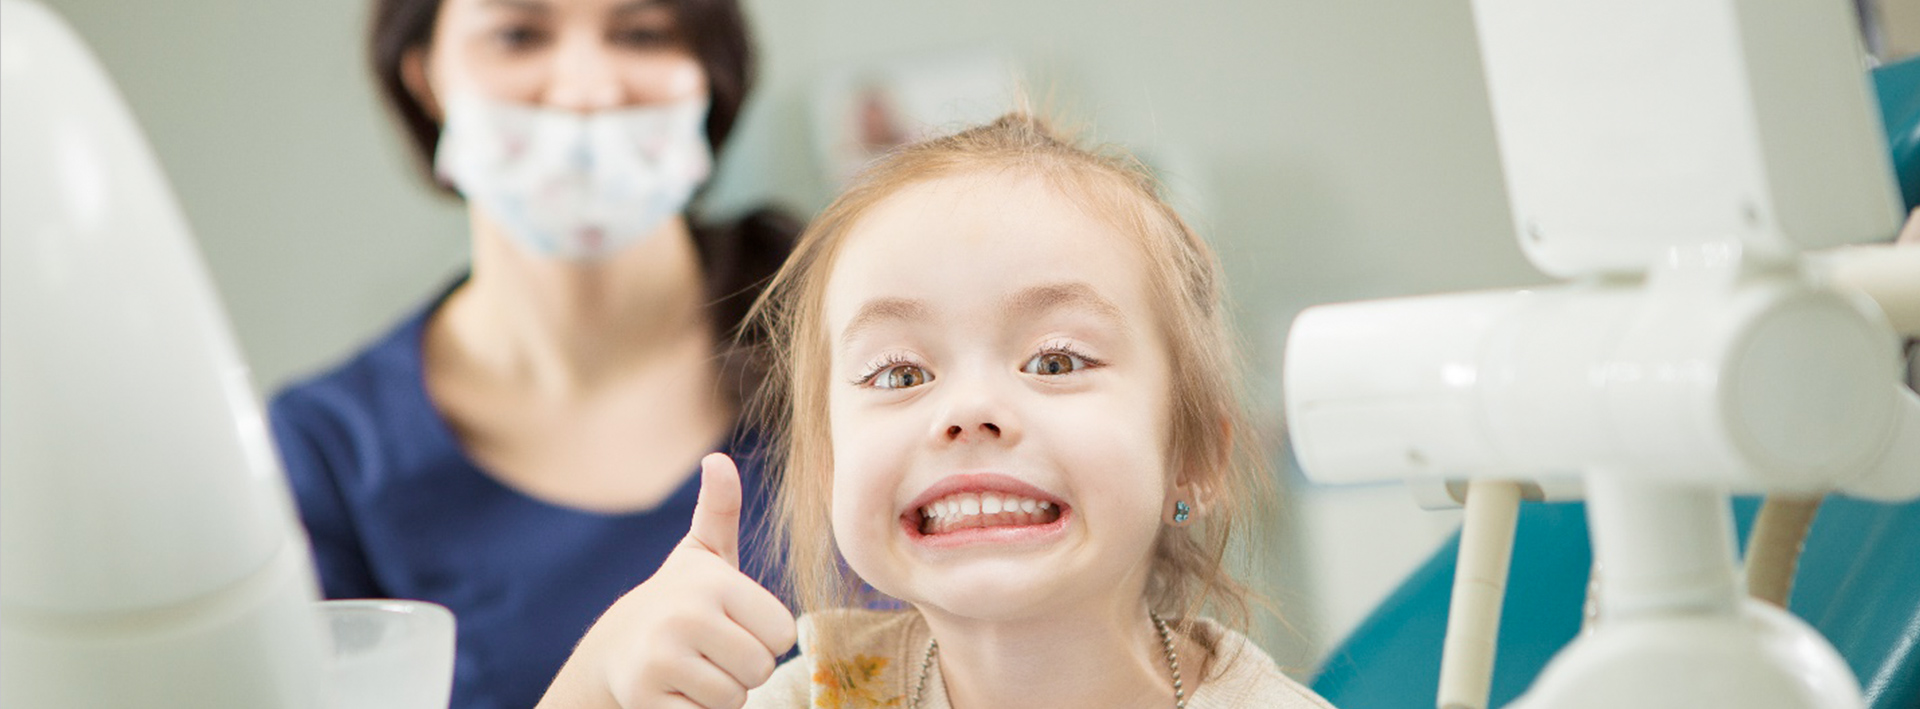 Детская стоматология с острой болью томск Снятие зубных отложений Томск Беломорская